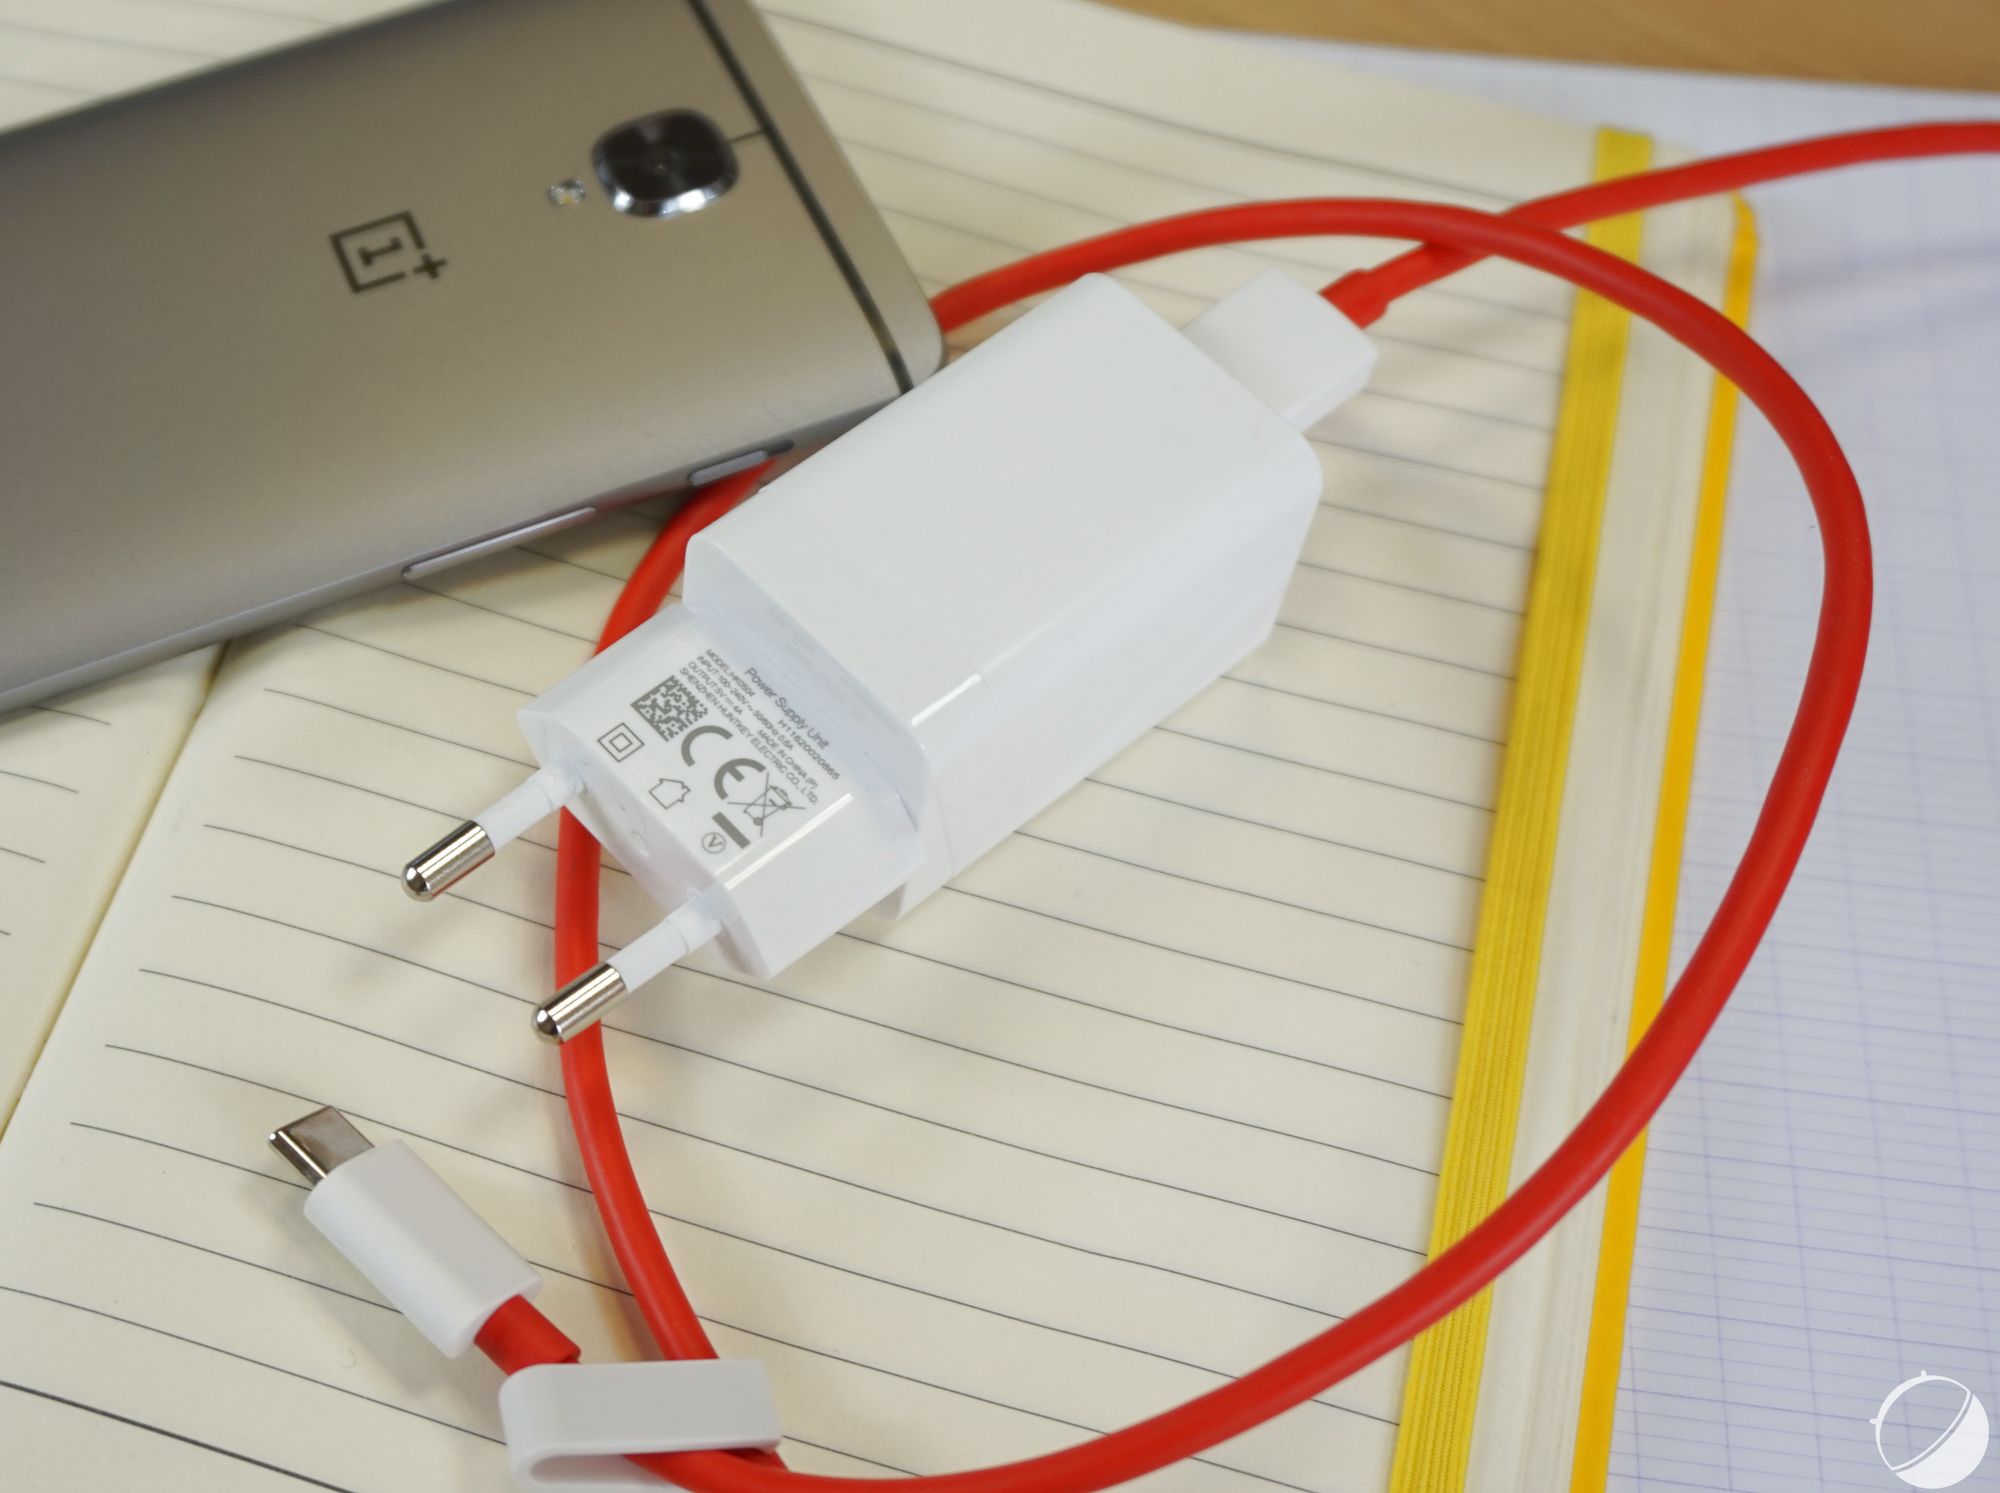 Samsung Adaptateur de charge rapide, chargeur économe en énergie avec câble  de données USB-C, 25 W Couleur Blanc